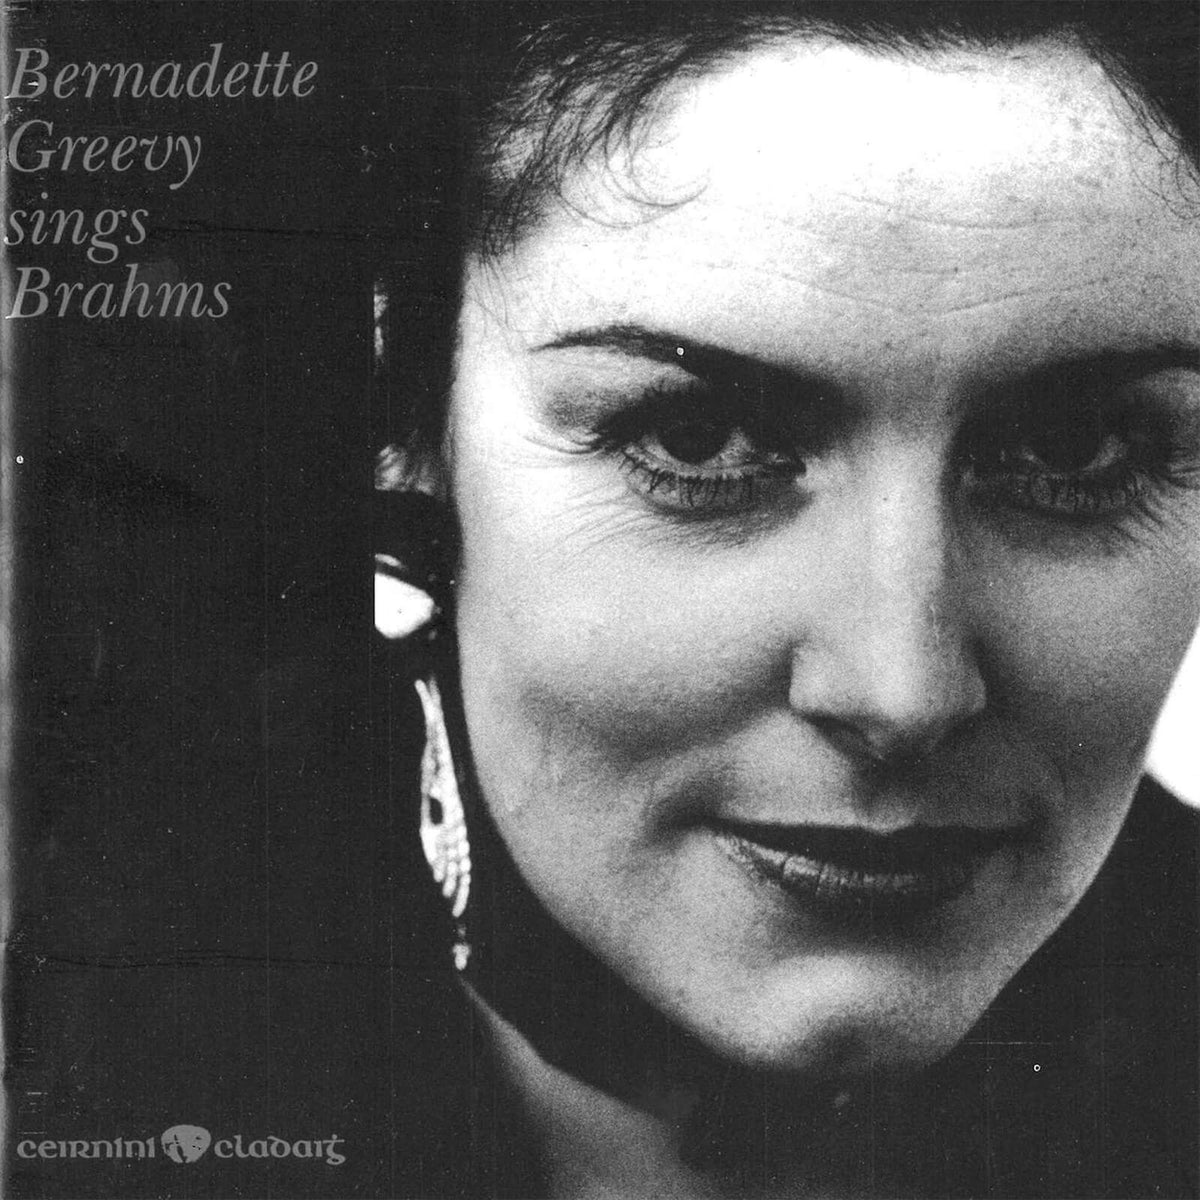 Bernadette McGreevy : Sings Brahms